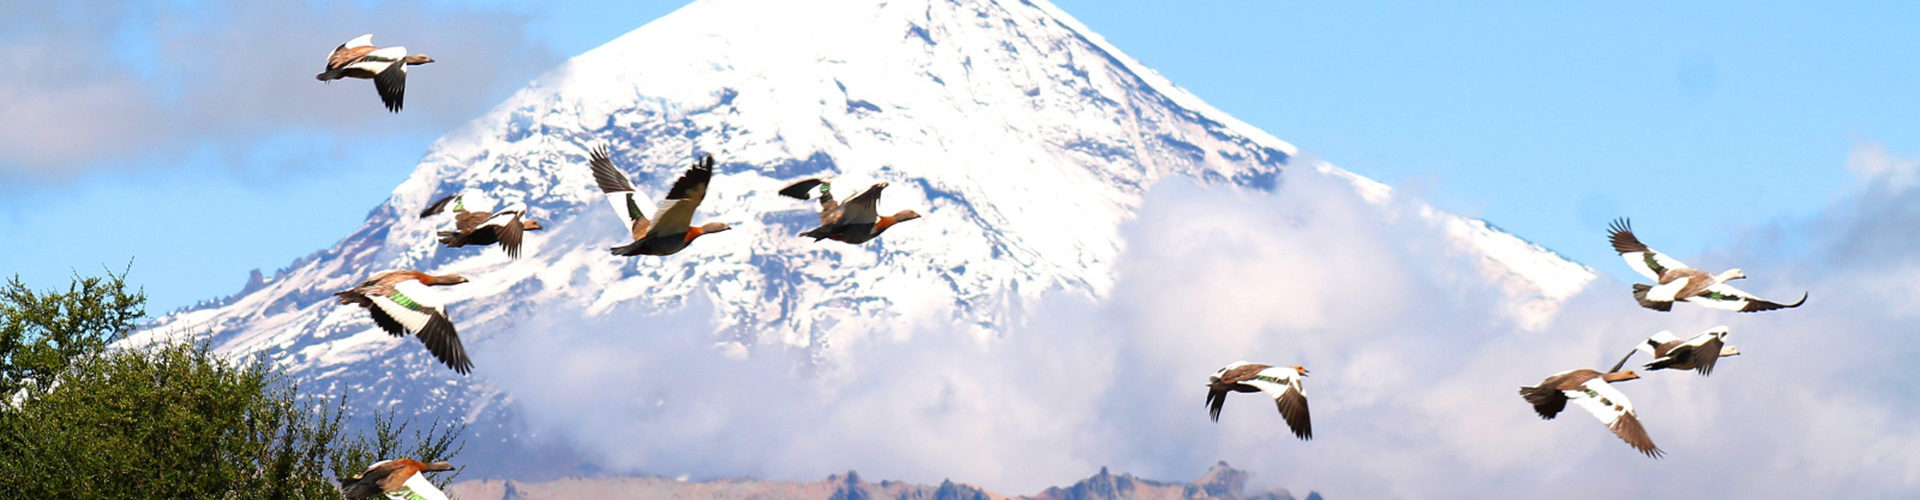 Bandada de aves de la especie Chloephaga volando en la Patagonia